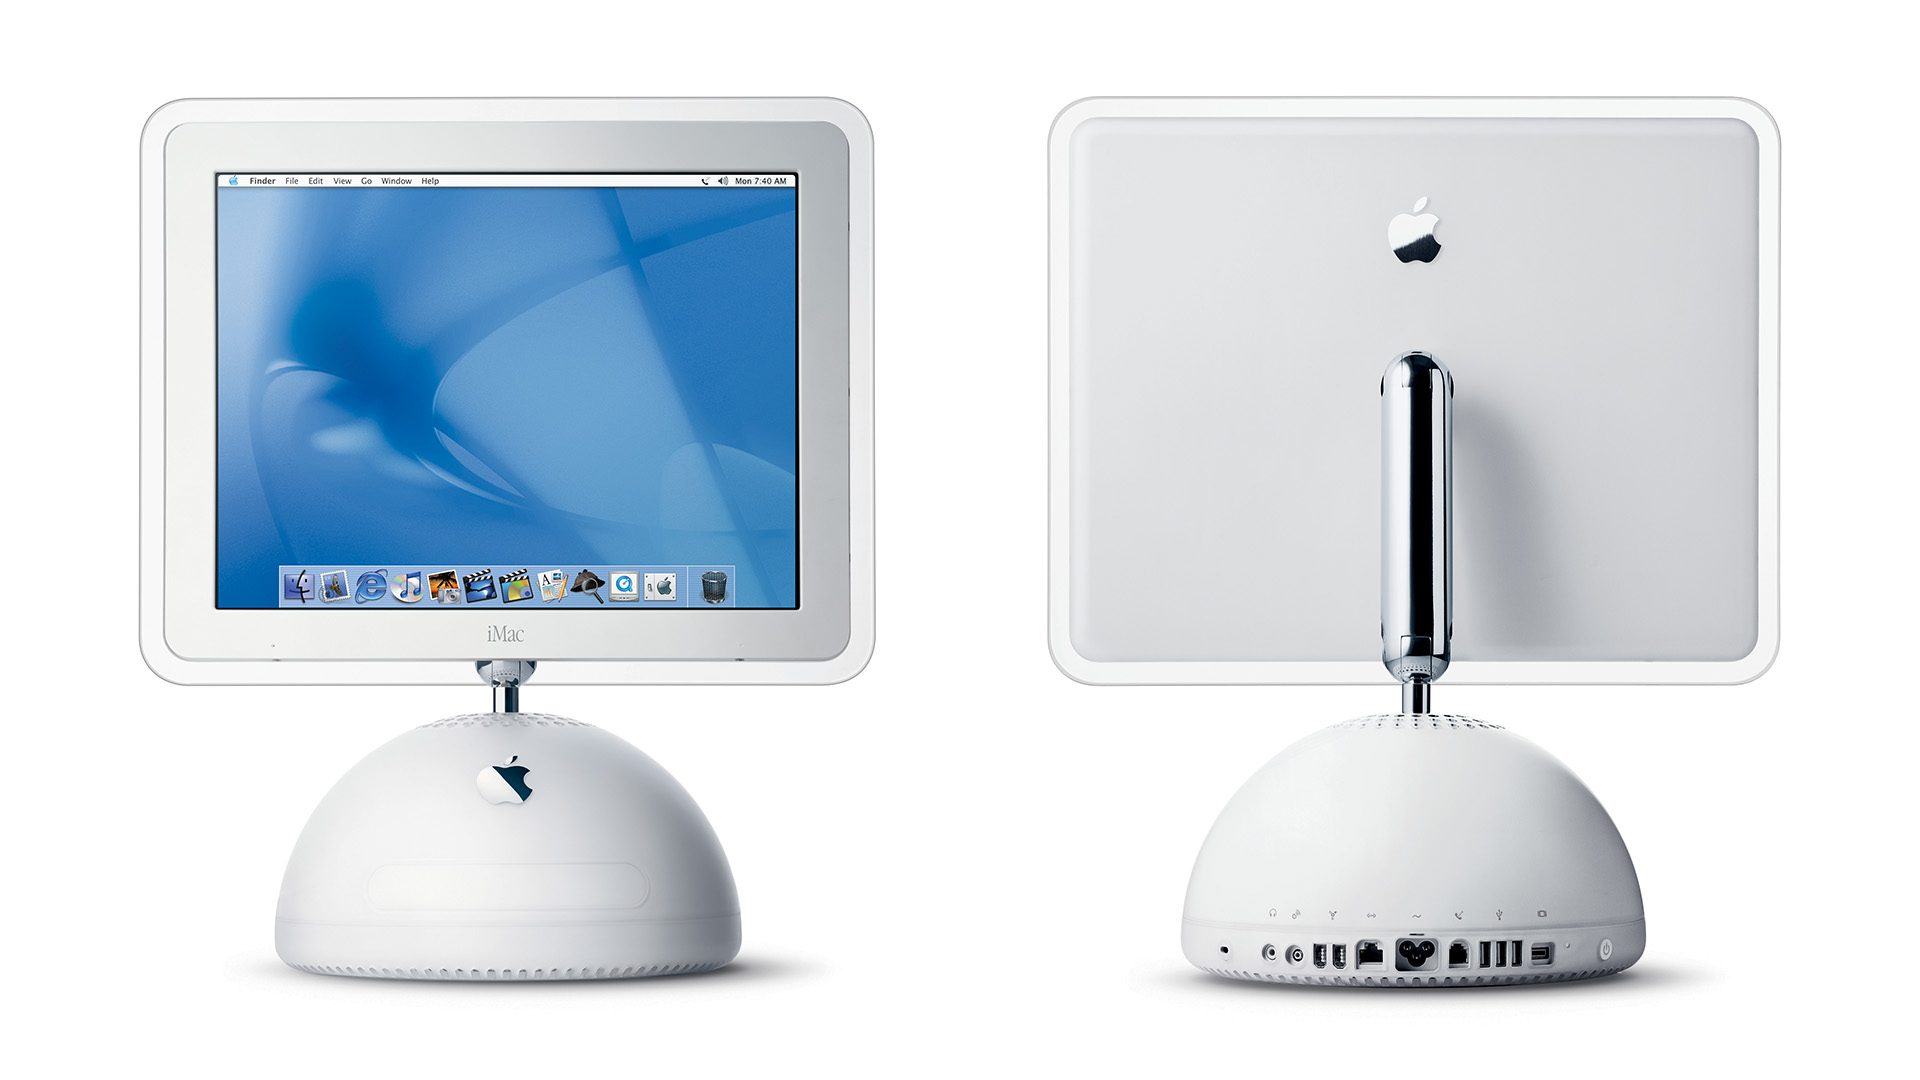 Kết quả của sự lặp lại không ngừng về thiết kế cho iMac 5-210